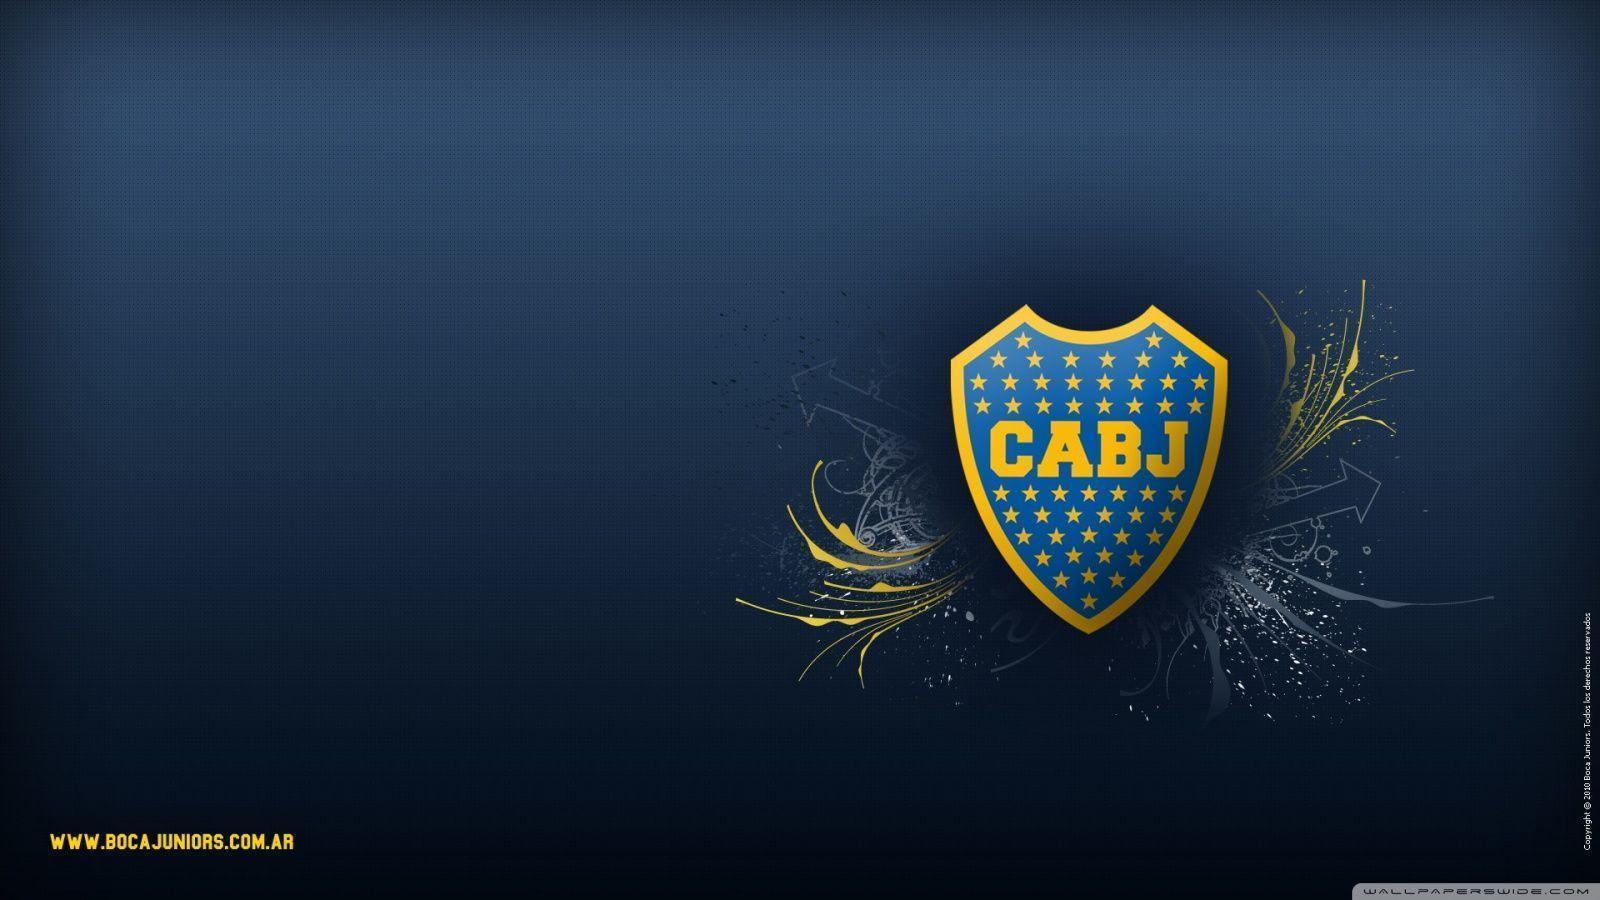 Boca Juniors Wide HD desktop wallpaper, High Definition